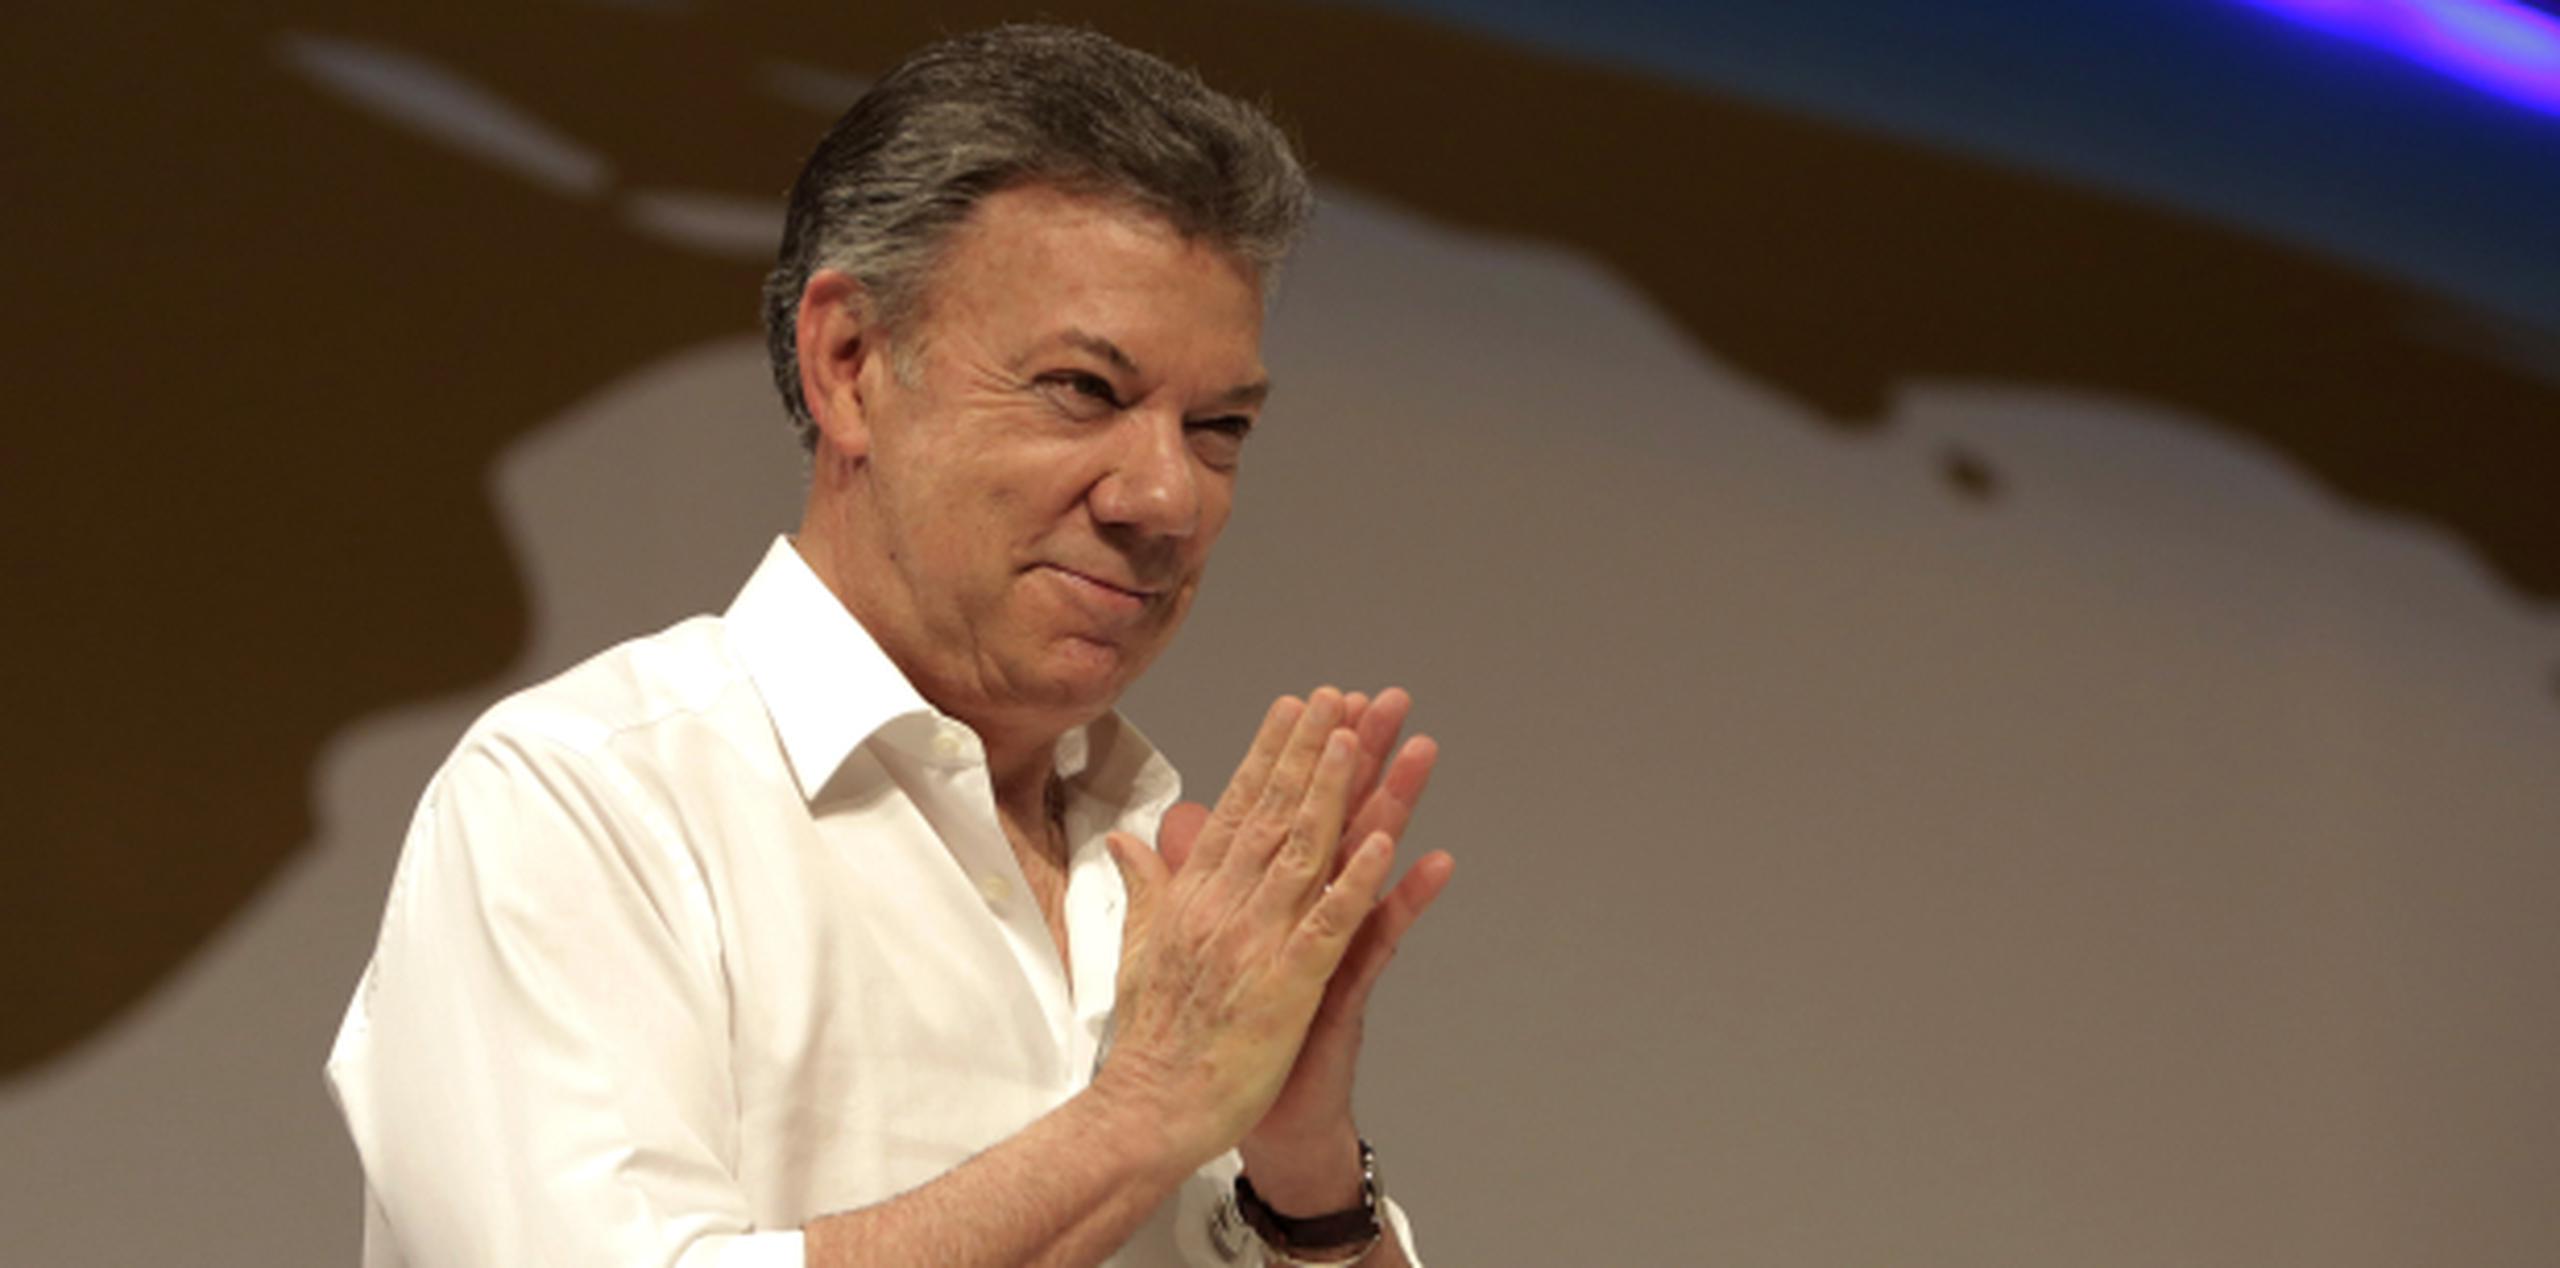 El presidente colombiano Juan Manuel Santos aseguró que el acuerdo logrado con un inversionista permitirá rescatar el pecio con la mejor tecnología disponible. (EFE/RICARDO MALDONADO ROZO)
